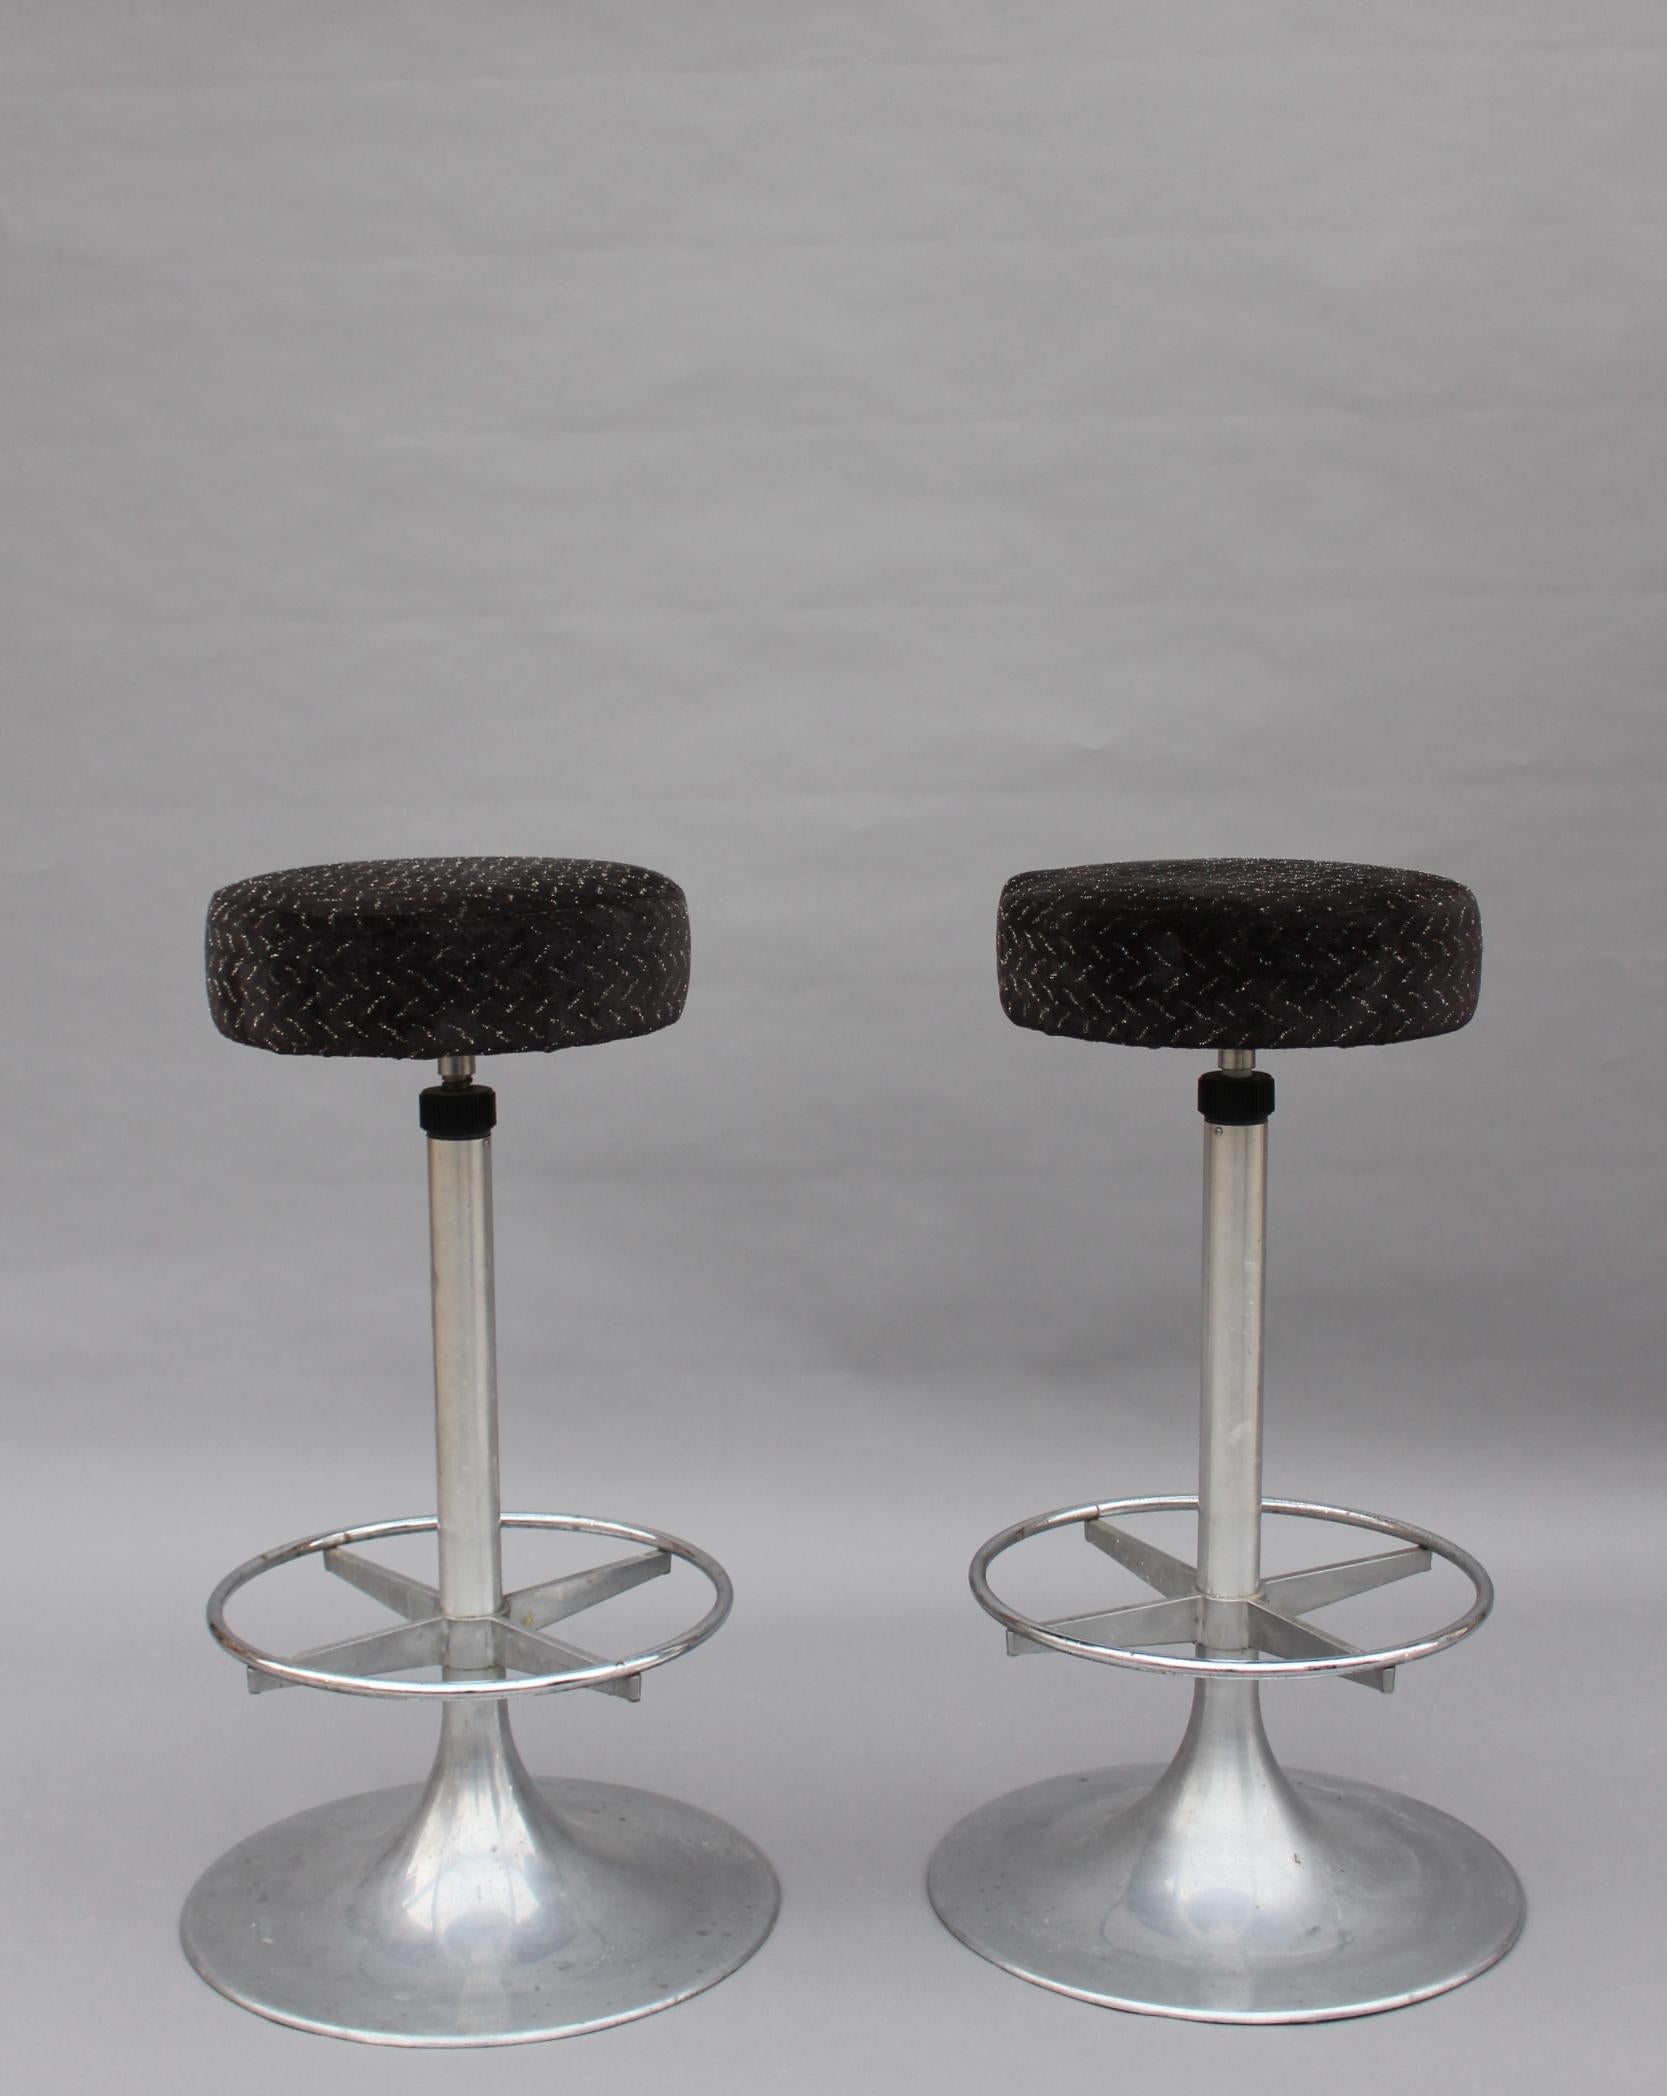 Ein Paar Barhocker aus Aluminiumguss der 1960er Jahre mit verchromten Fußstützen 
Der Durchmesser des Sitzes beträgt 14 1/4